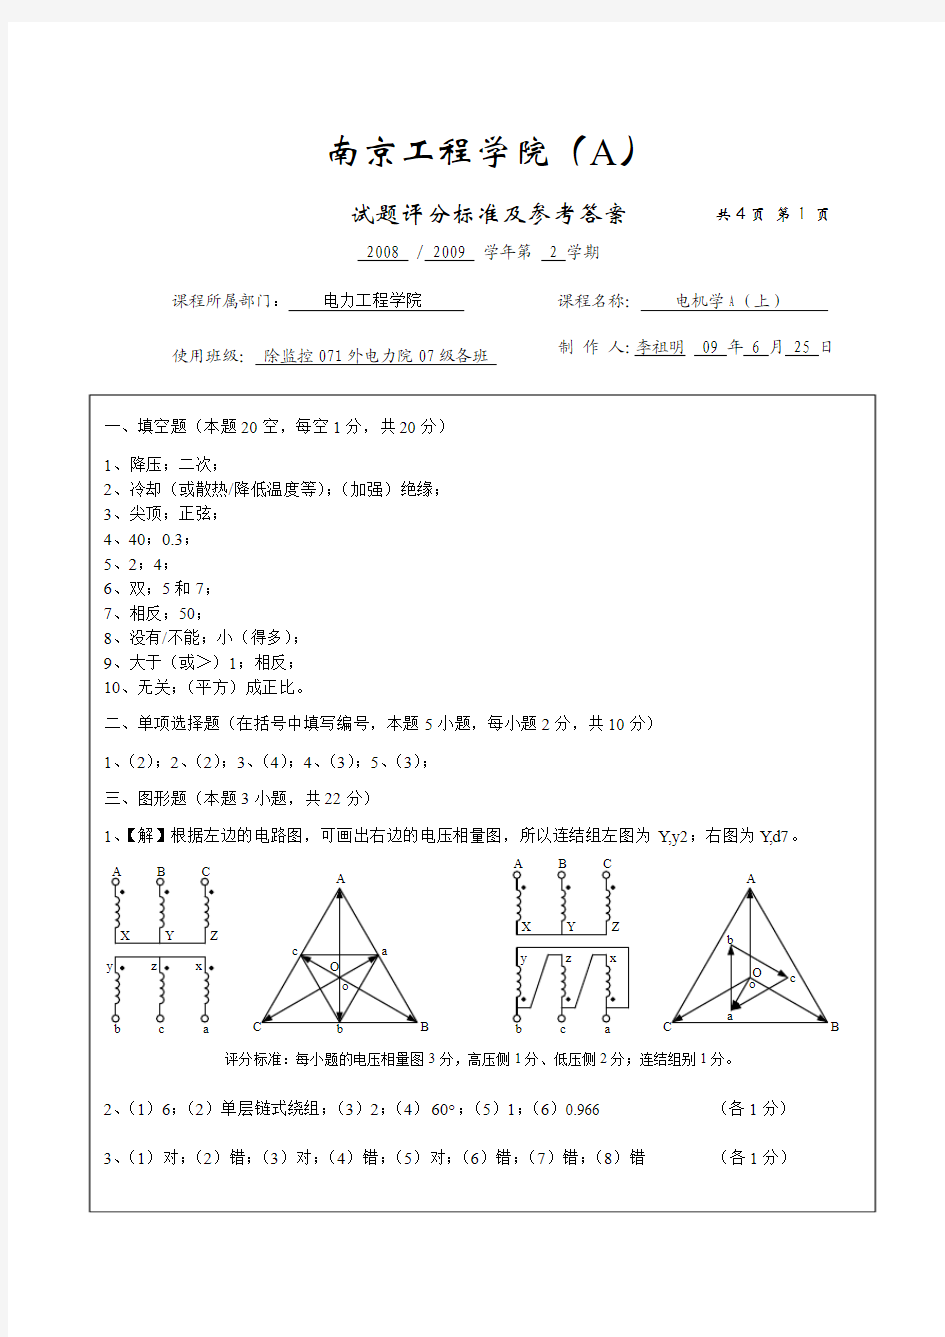 08-09-2 南京工程学院 电机学 A试卷评分标准及参考答案